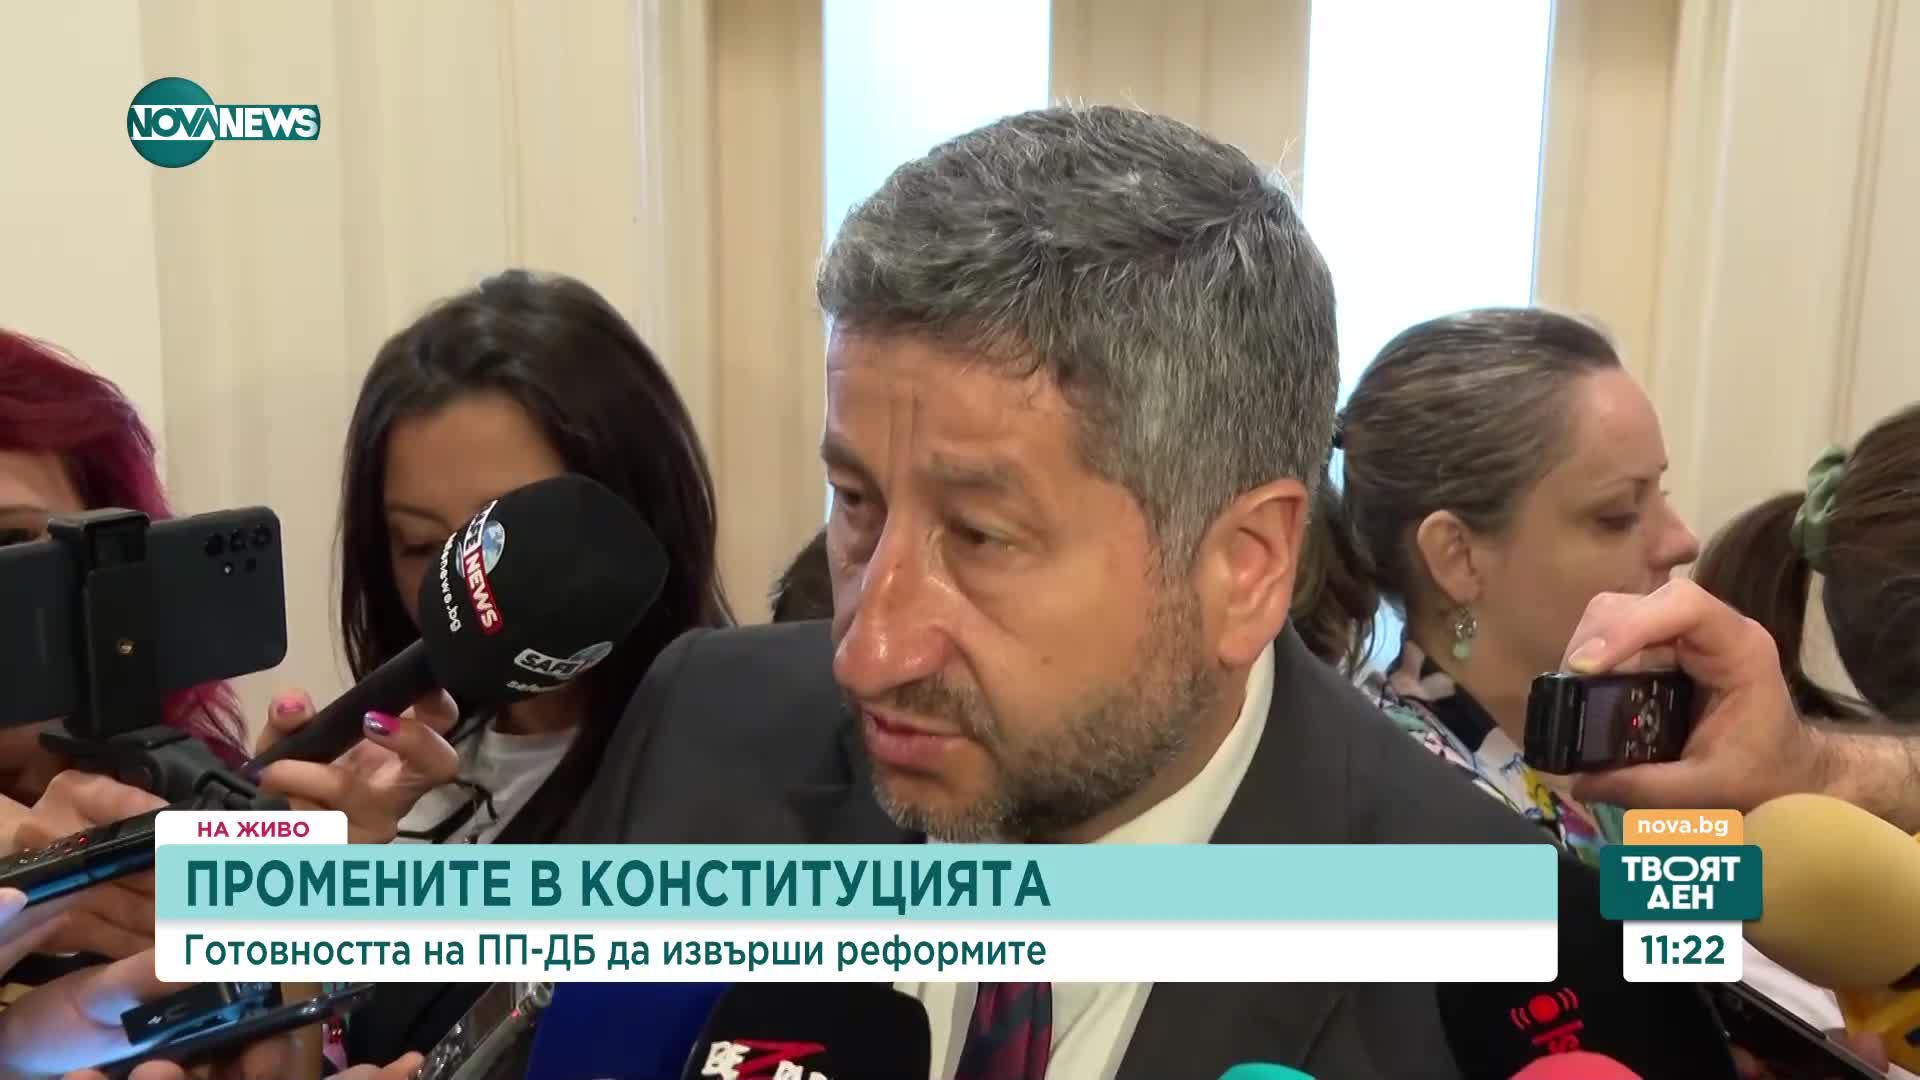 Катя Панева, ПП-ДБ: Не сме си променили мнението към ДПС